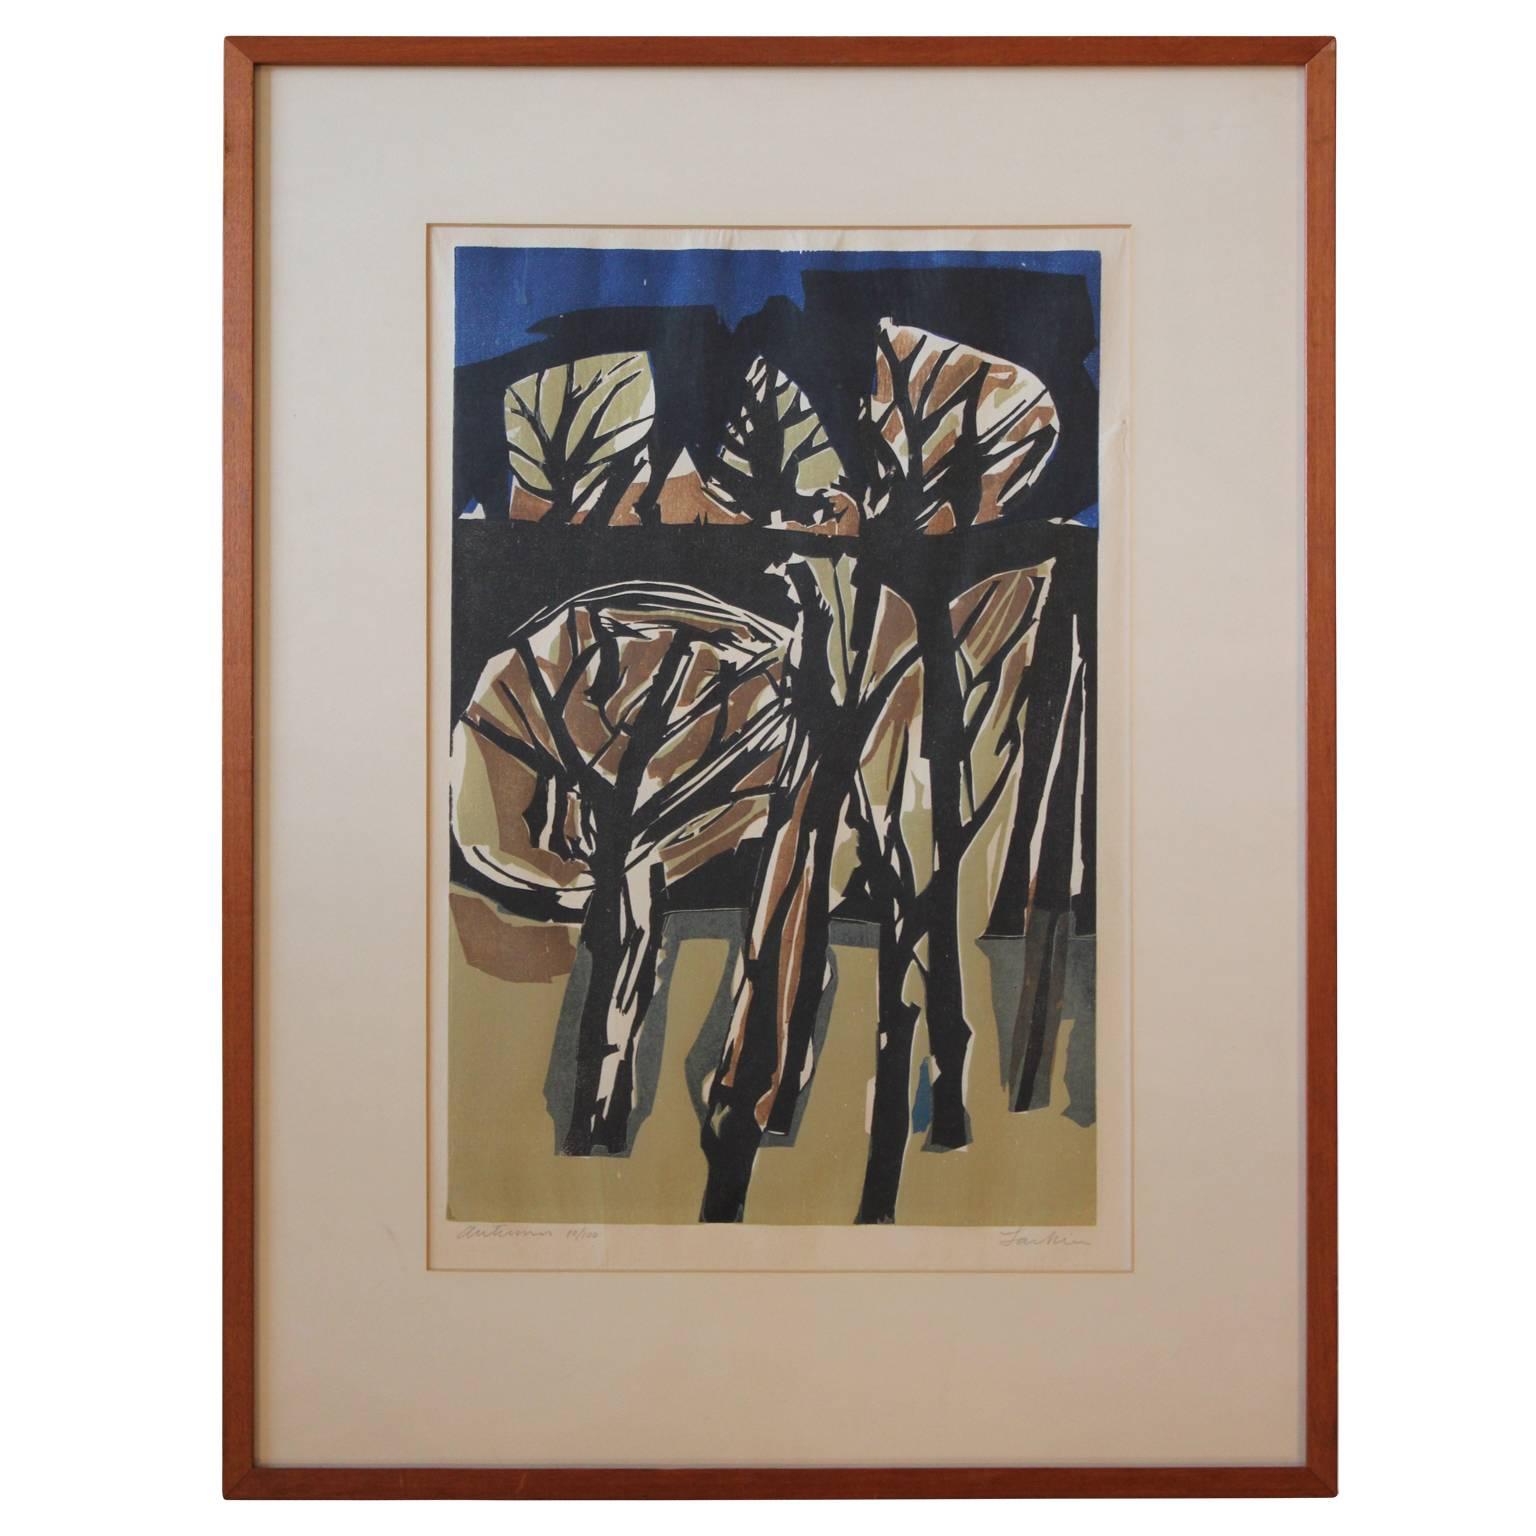 Eugene Larkin Abstract Print – "" Herbst"" Kubistischer Holzschnitt im kubistischen Stil Auflage 10/100 